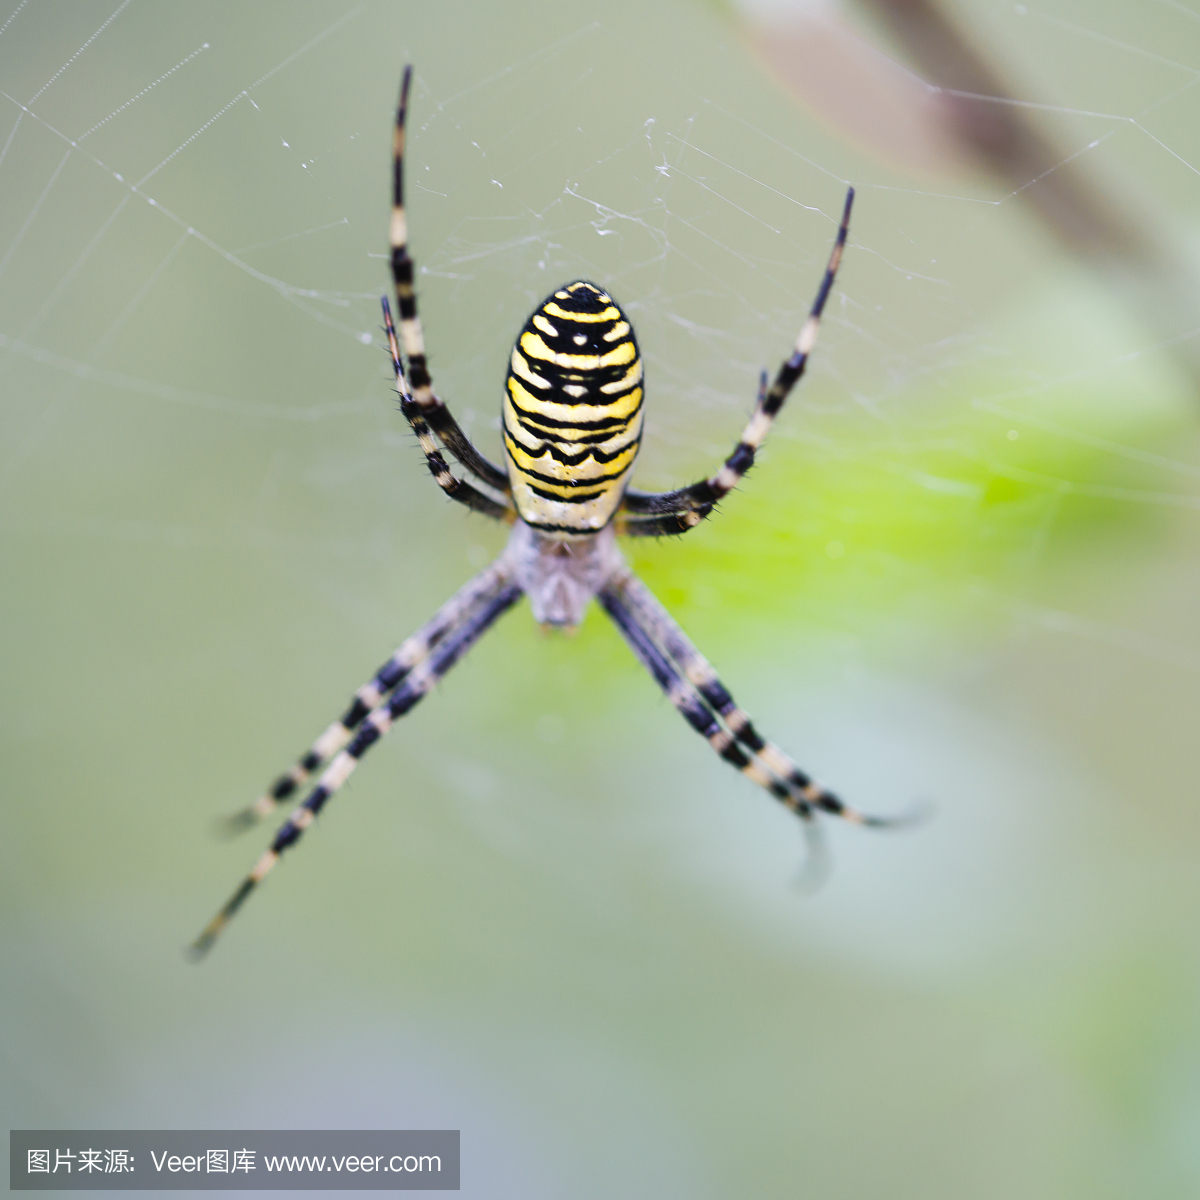 大蜘蛛挂在网上